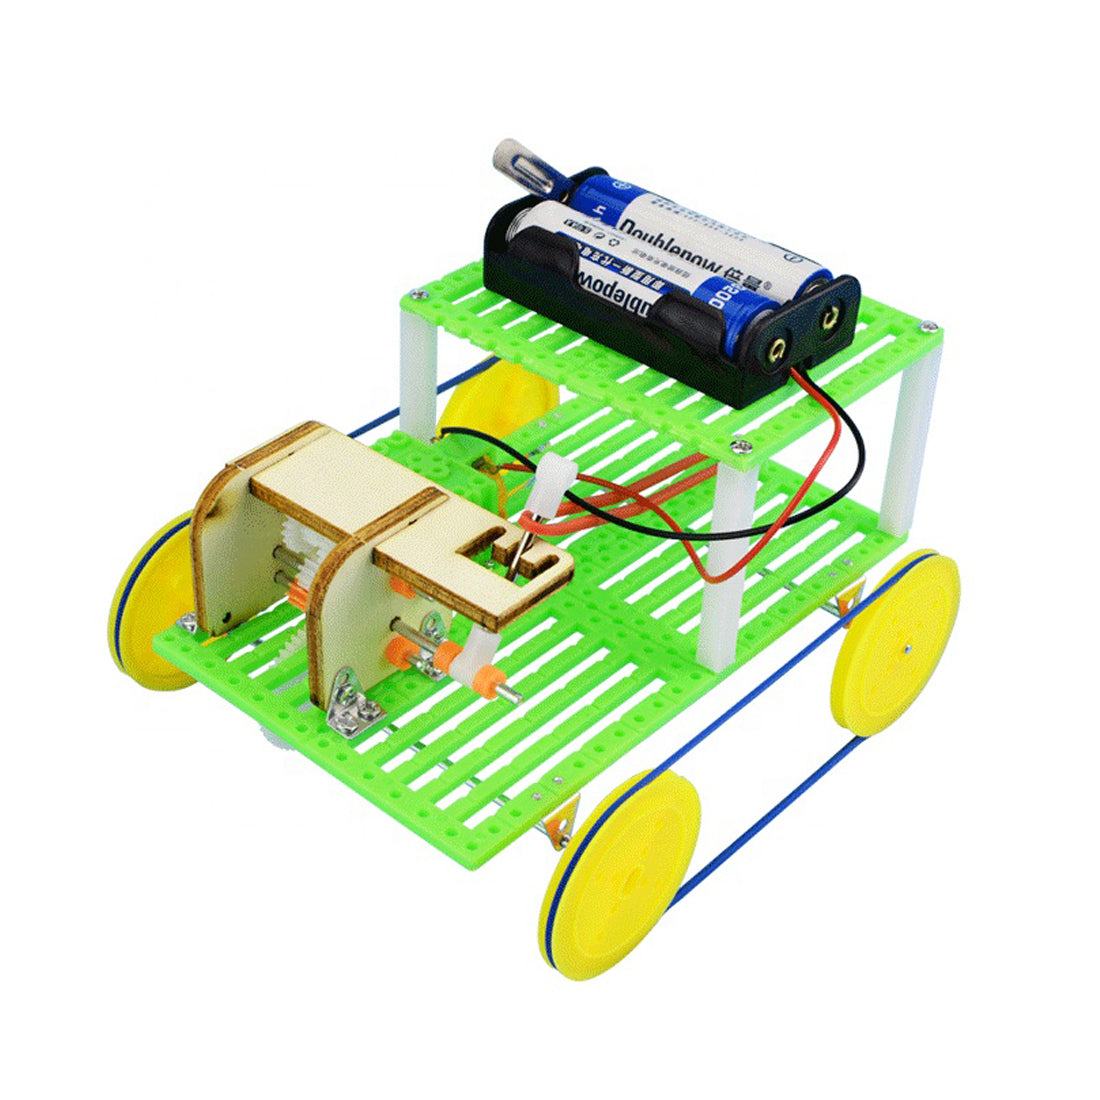 DIY STEM Gear shifting car stem toys educational kits